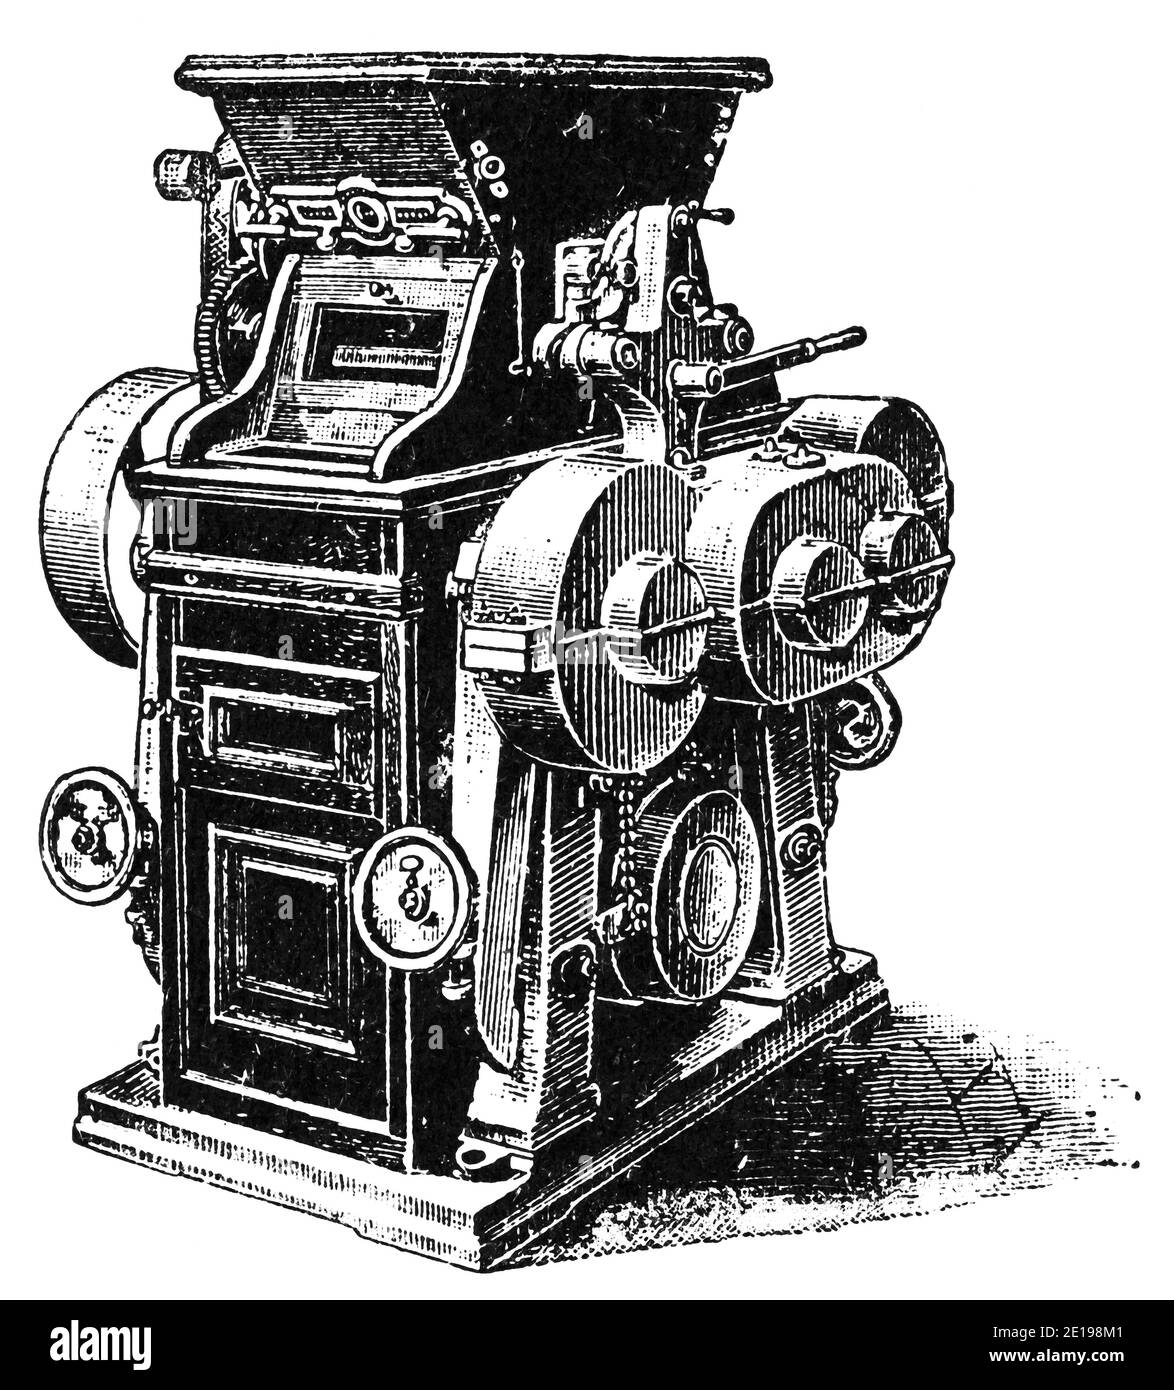 Usine électrique industrielle Illustration du XIXe siècle. Allemagne. Arrière-plan blanc. Banque D'Images